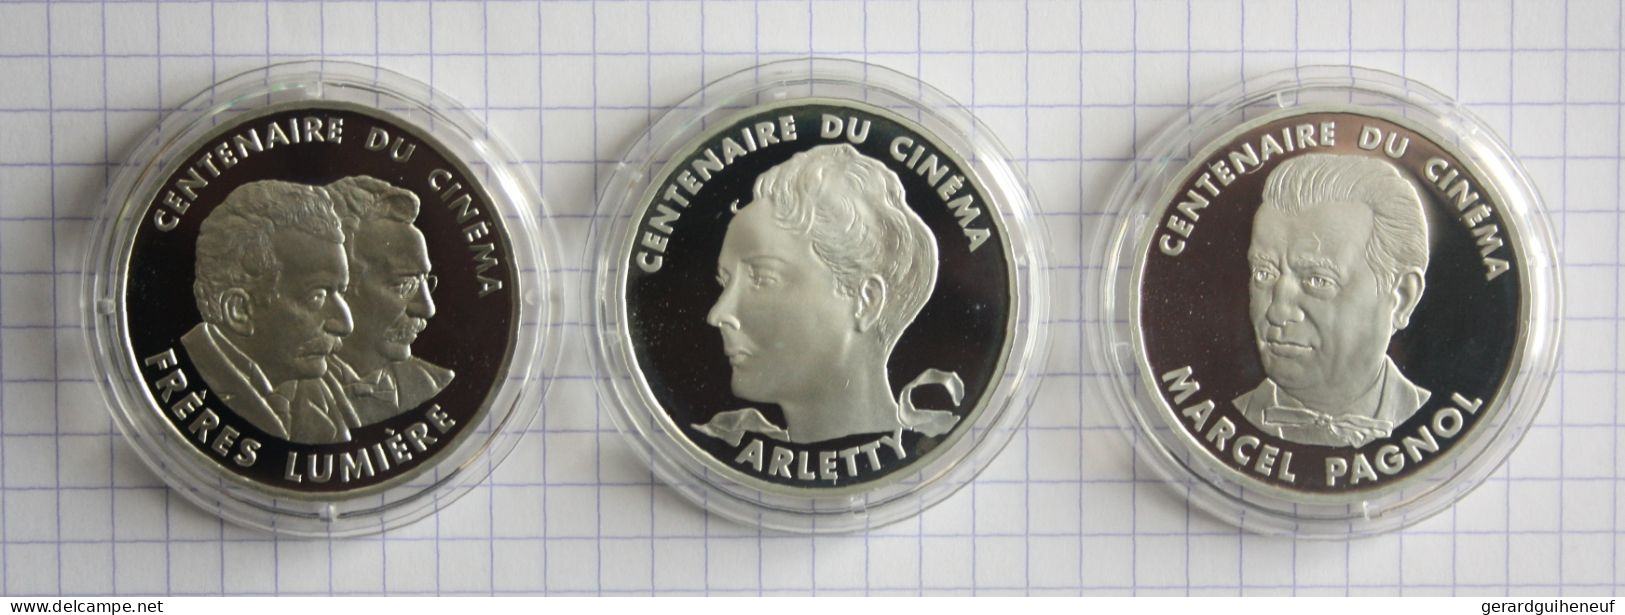 FRANCE : 3 Monnaies 100 Francs ARGENT En Qualité FDC - Cotation : 97 Euros - Lots & Kiloware - Coins